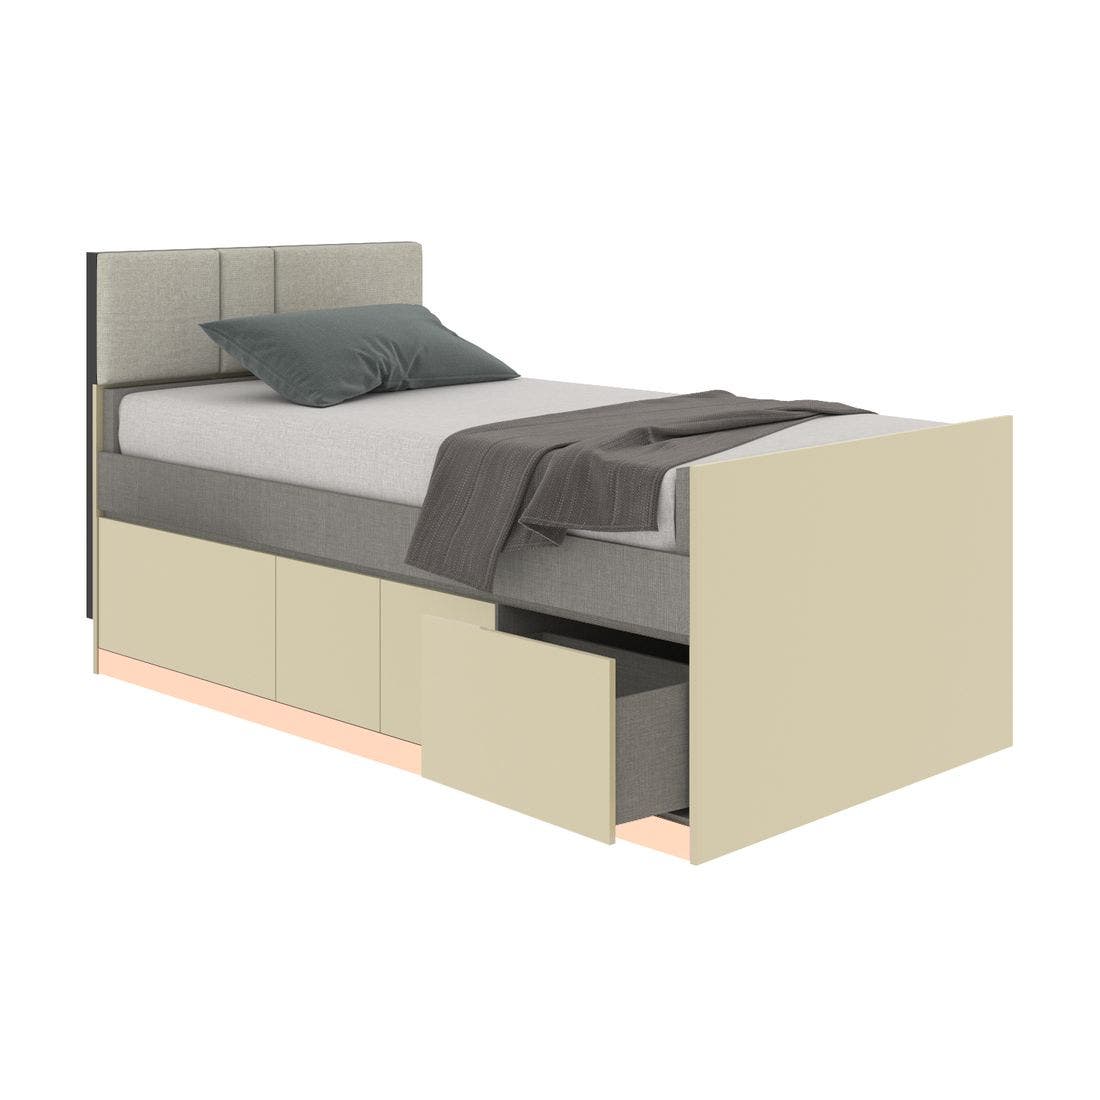 19203761-blisz-furniture-bedroom-furniture-beds-06